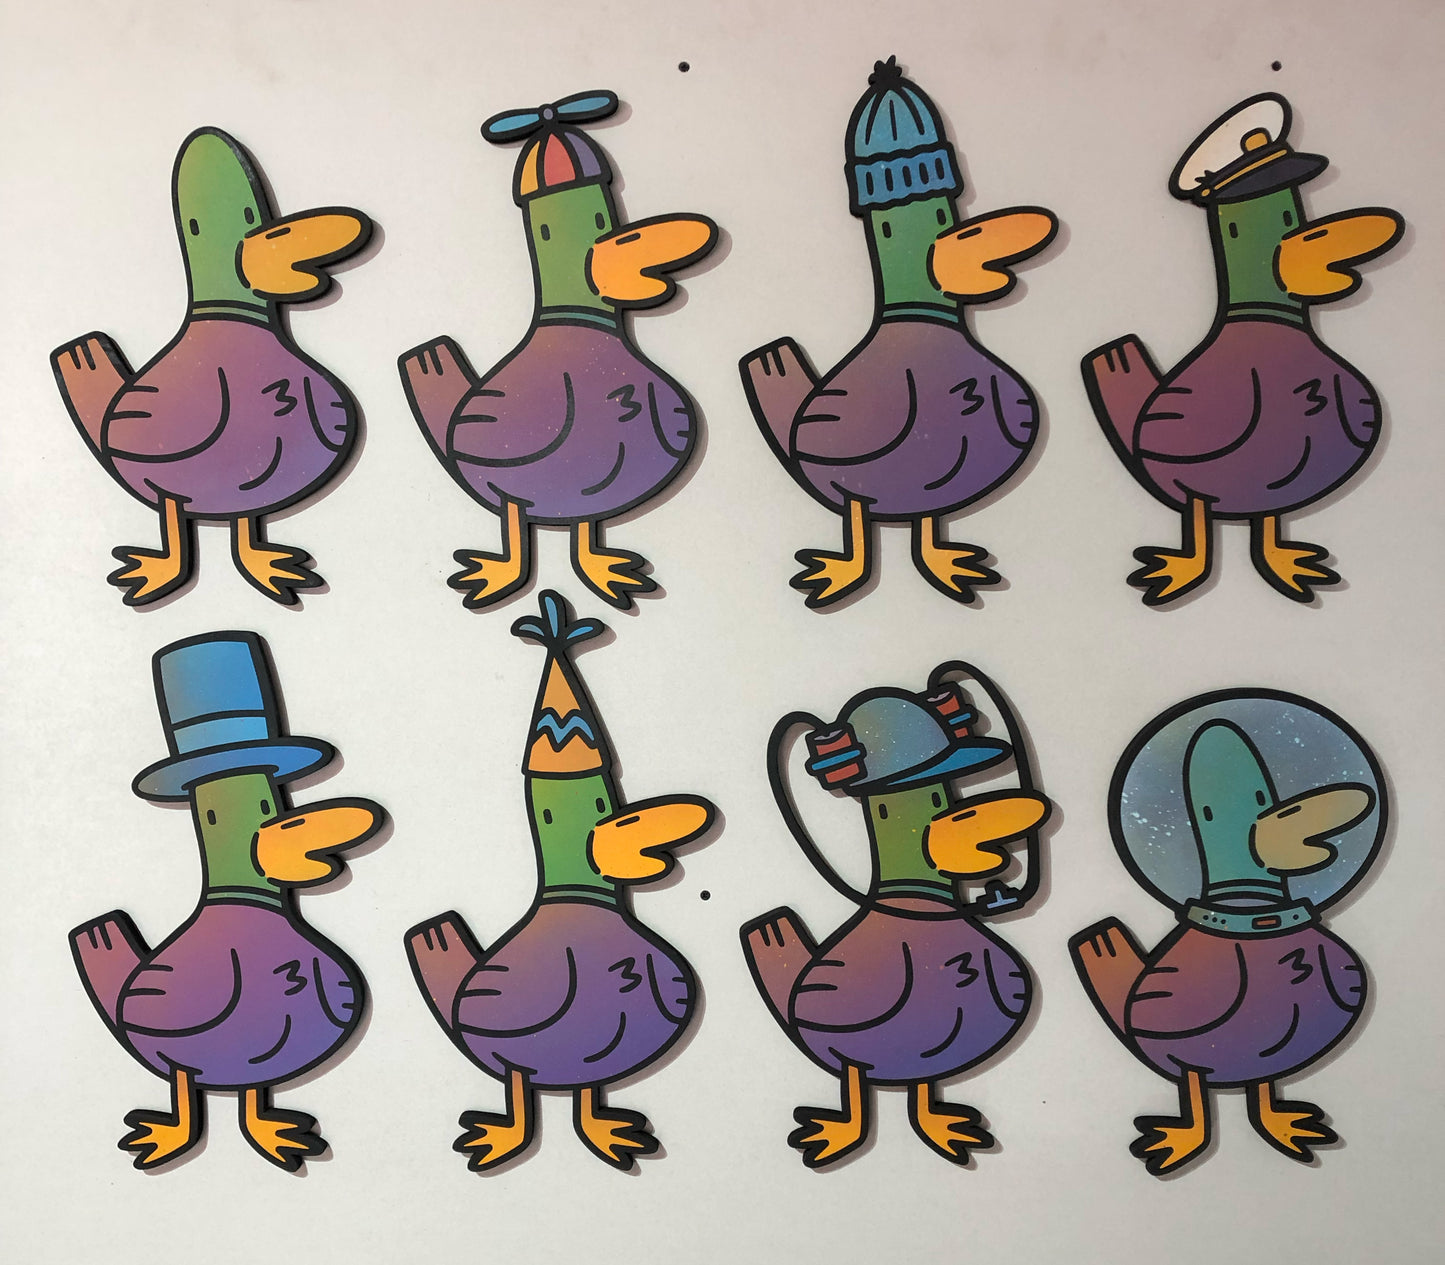 Top Hat Doug (the Duck)